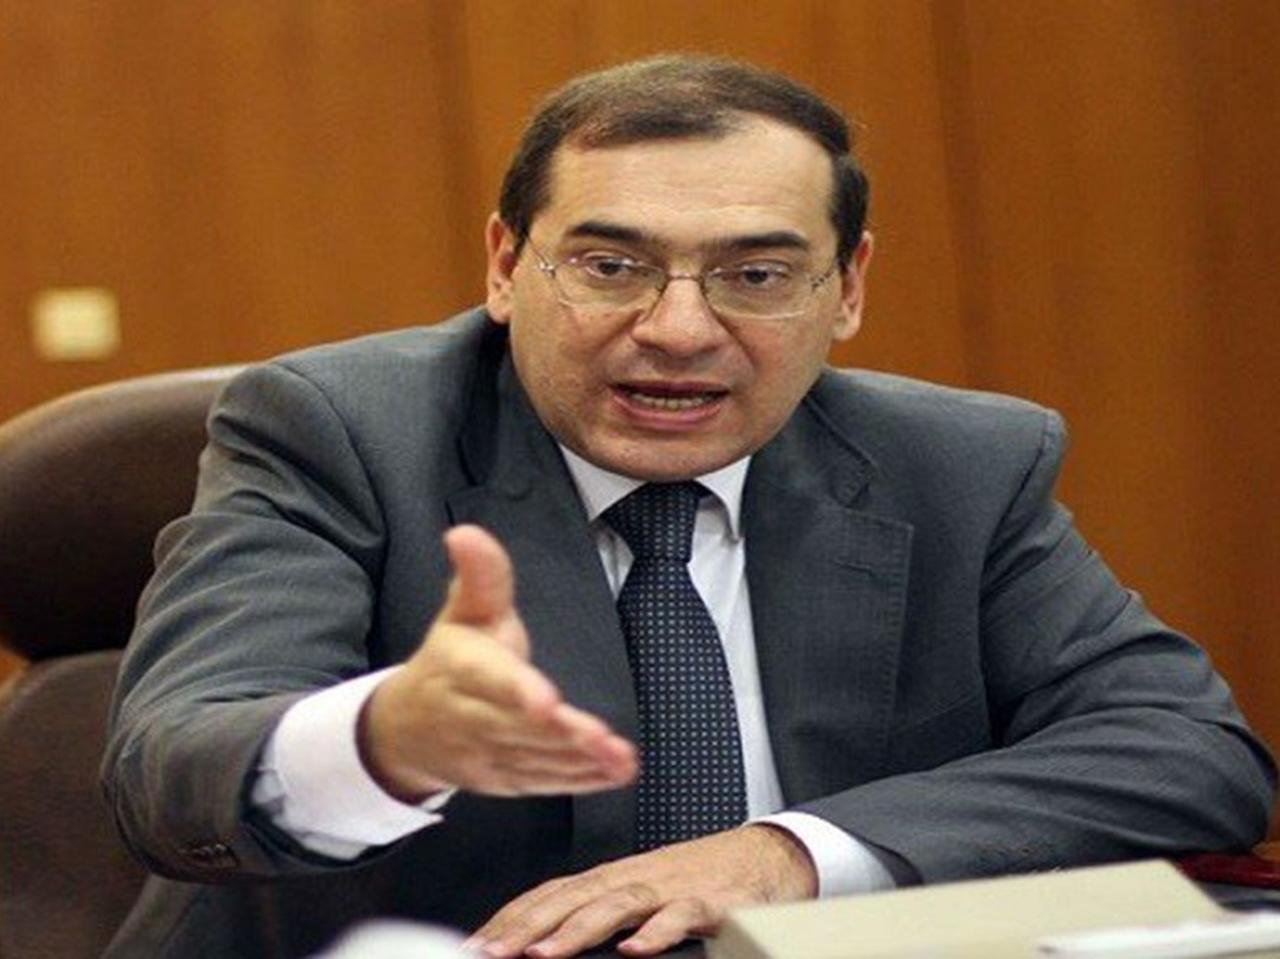 وزير البترول المصري يصل الرياض بعد شهرين من أزمة أرامكو